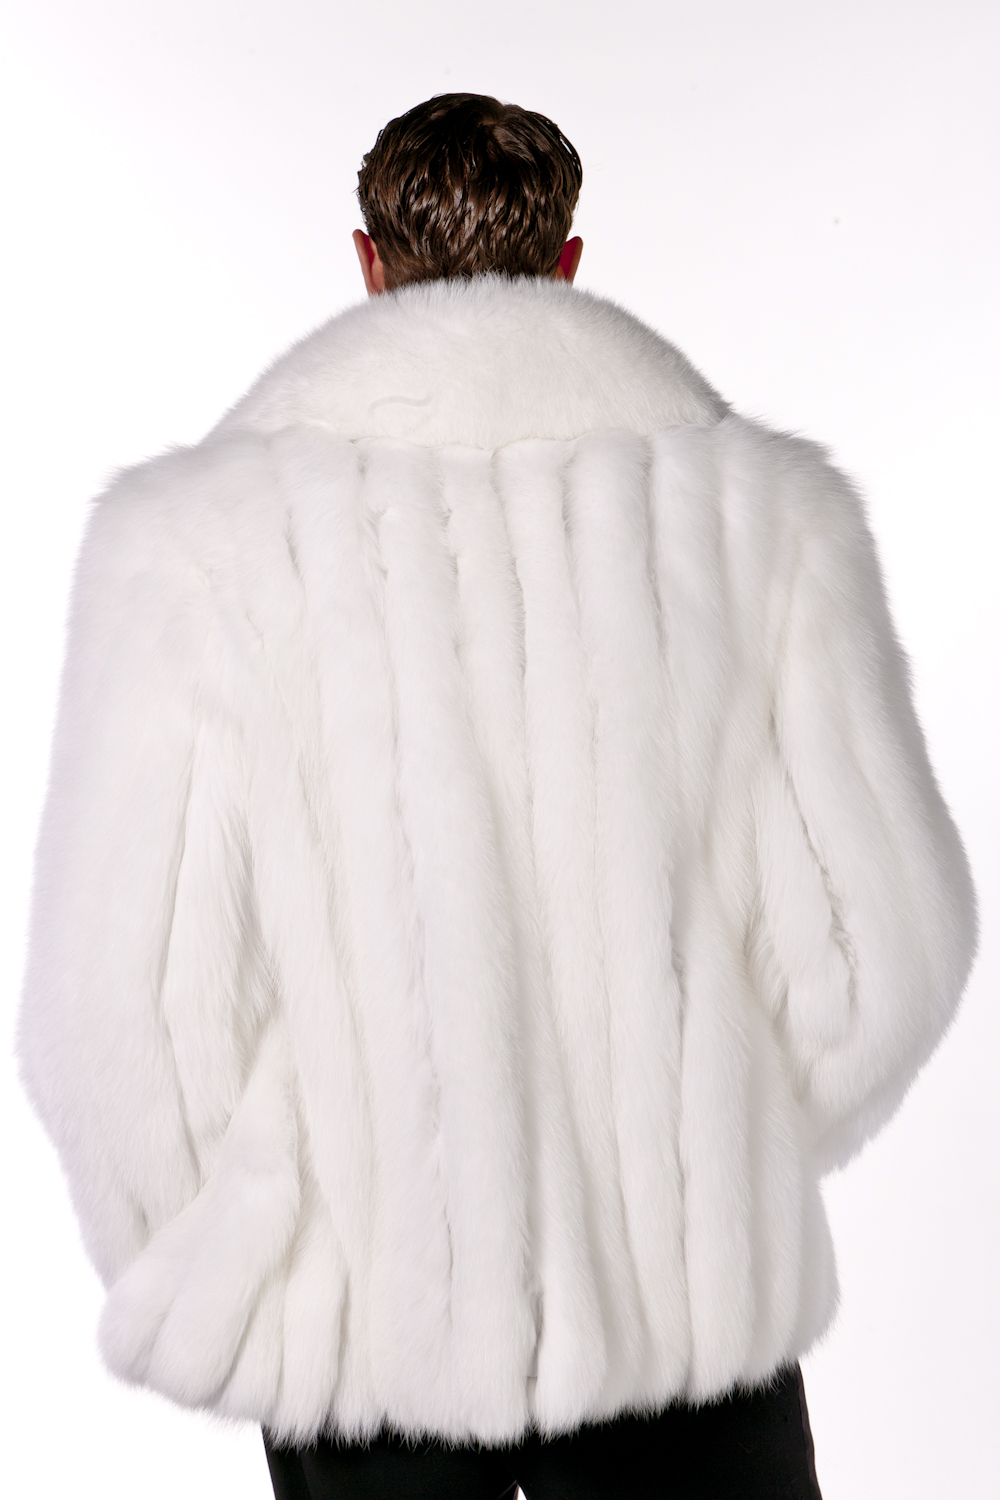 Men Winter White Fur Coat Long Sleeve Faux Wool Fur Outerwear